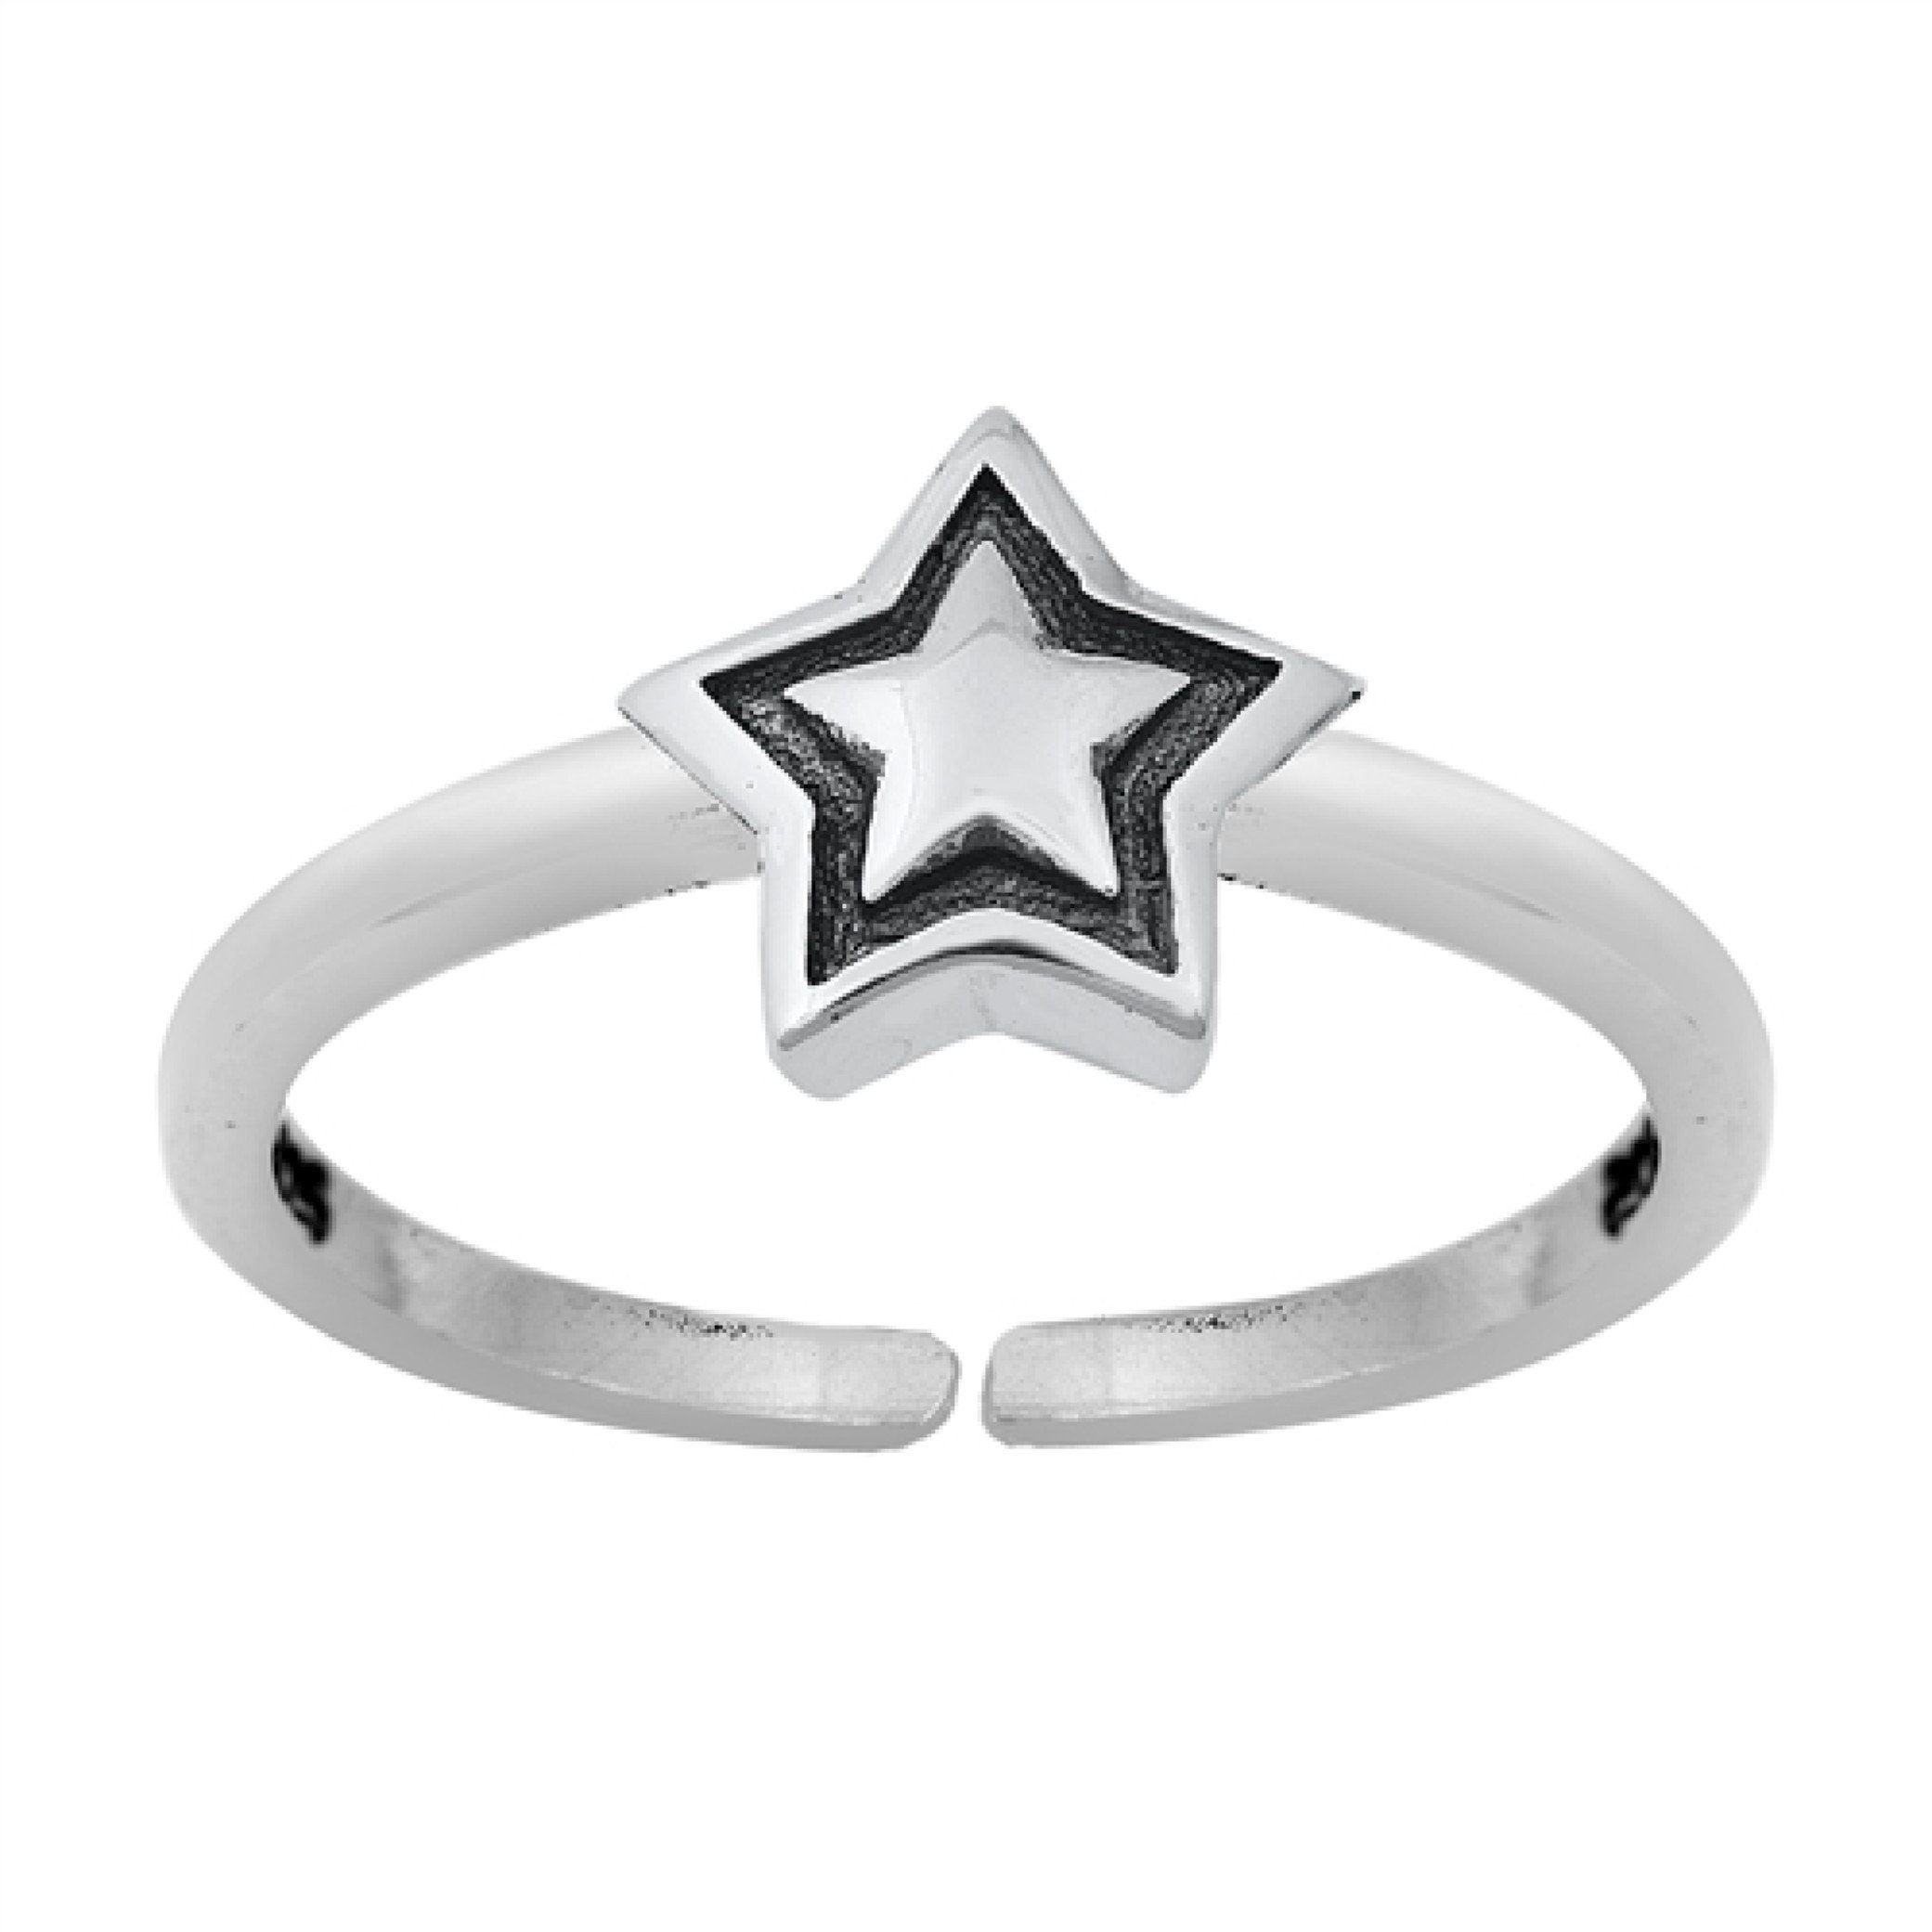 Silver Toe Ring, Silver Star Toe Ring, Star Toe Jewellery